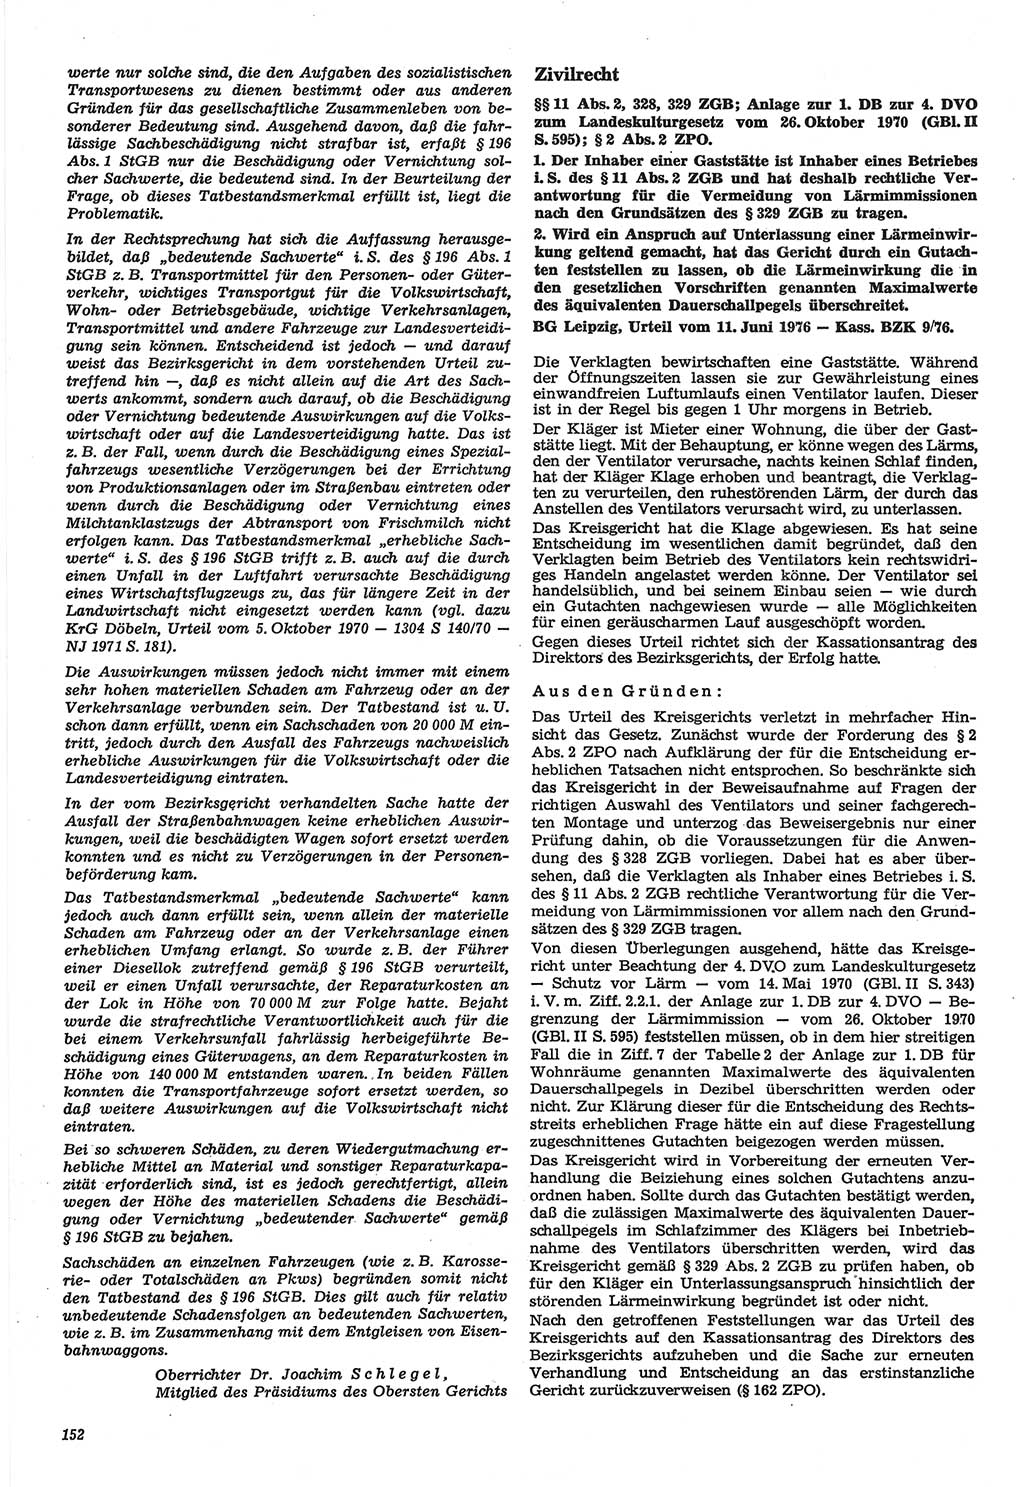 Neue Justiz (NJ), Zeitschrift für Recht und Rechtswissenschaft-Zeitschrift, sozialistisches Recht und Gesetzlichkeit, 31. Jahrgang 1977, Seite 152 (NJ DDR 1977, S. 152)